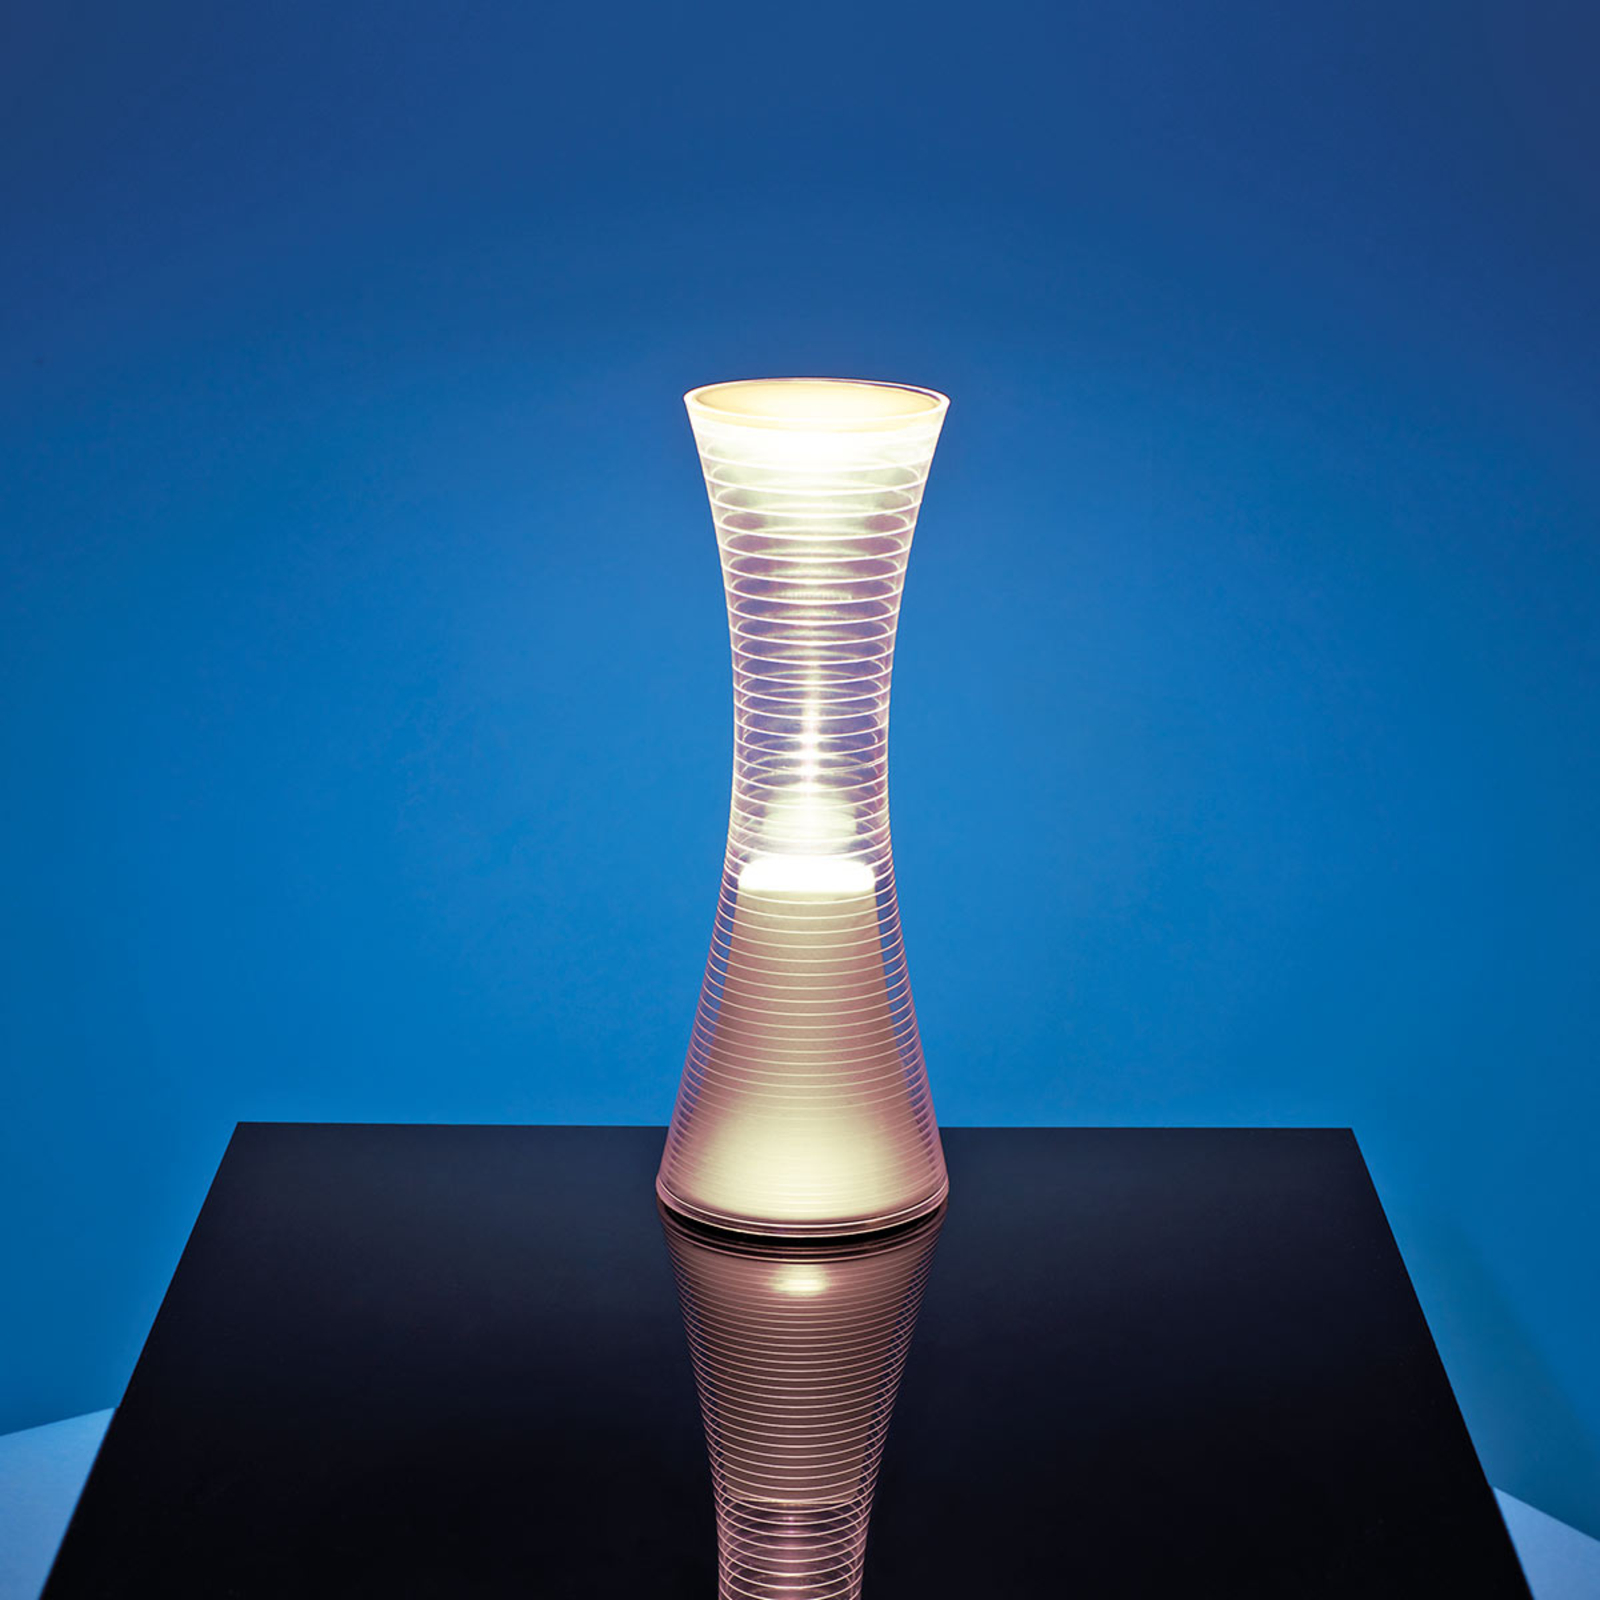 Artemide Come Together lampe LED 2 700 K blanche